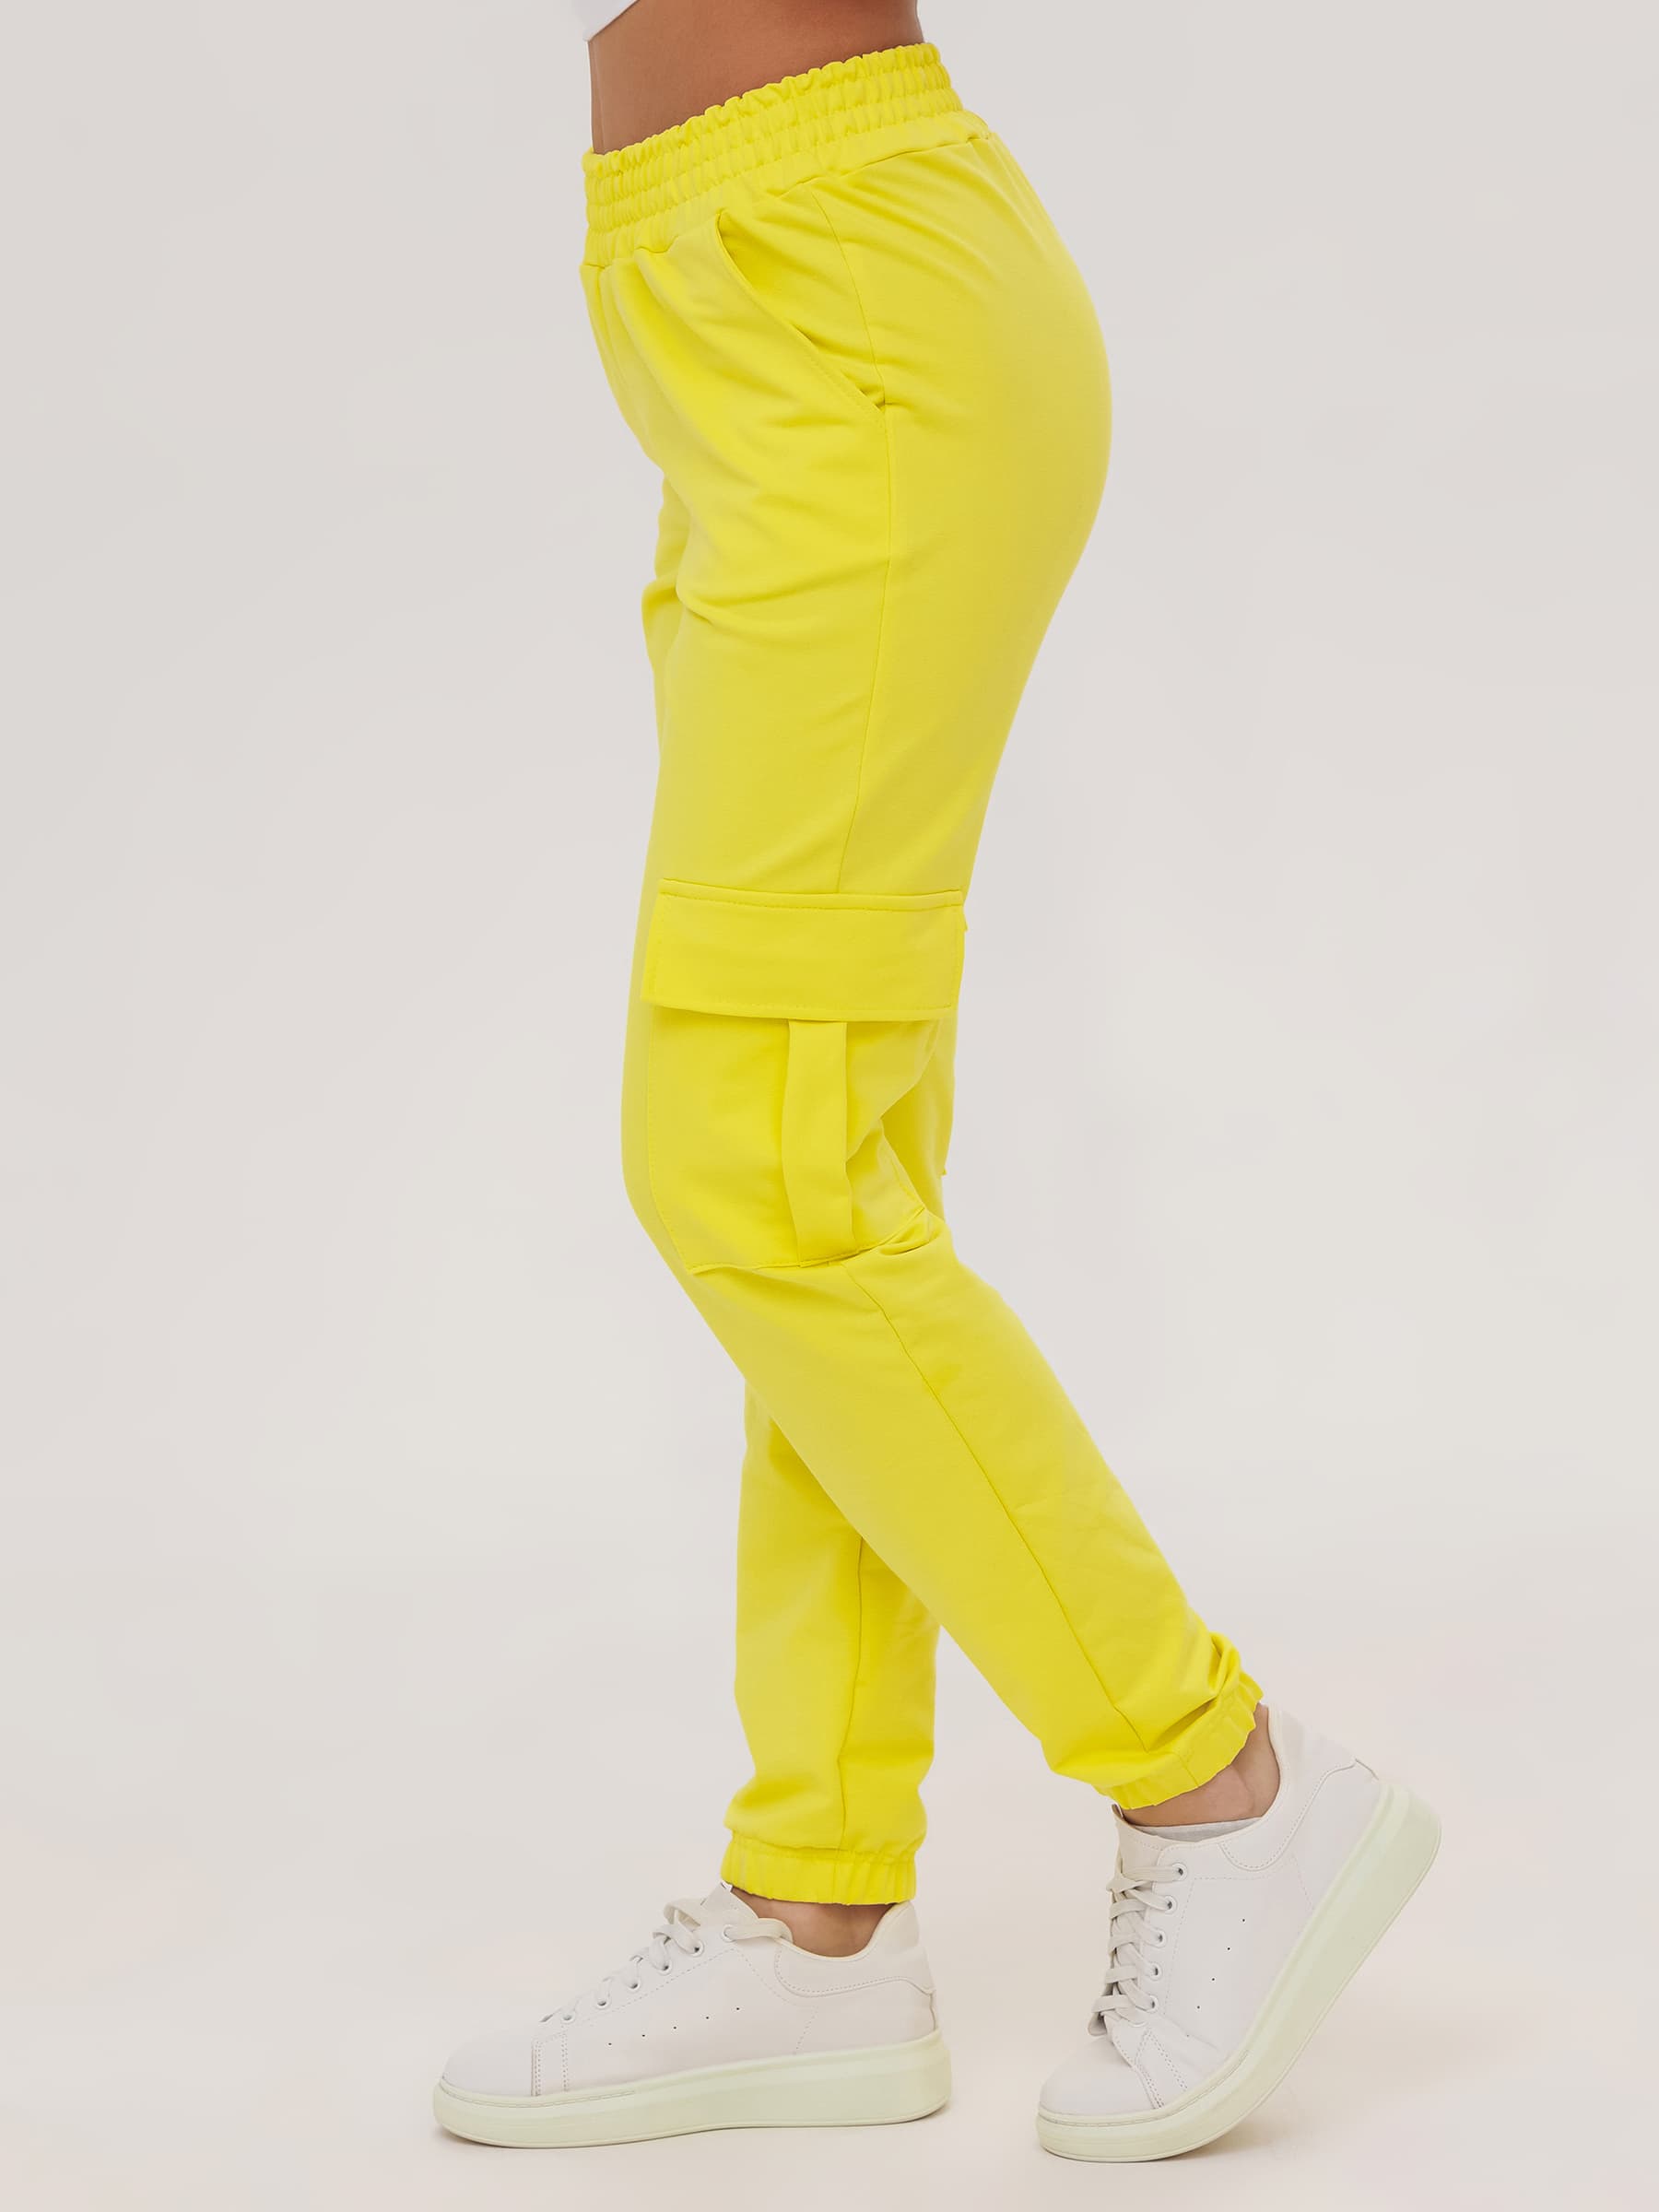 Жен. брюки повседневные арт. 23-0524 Желтый р. 42 Моделлини, размер 42 - фото 5